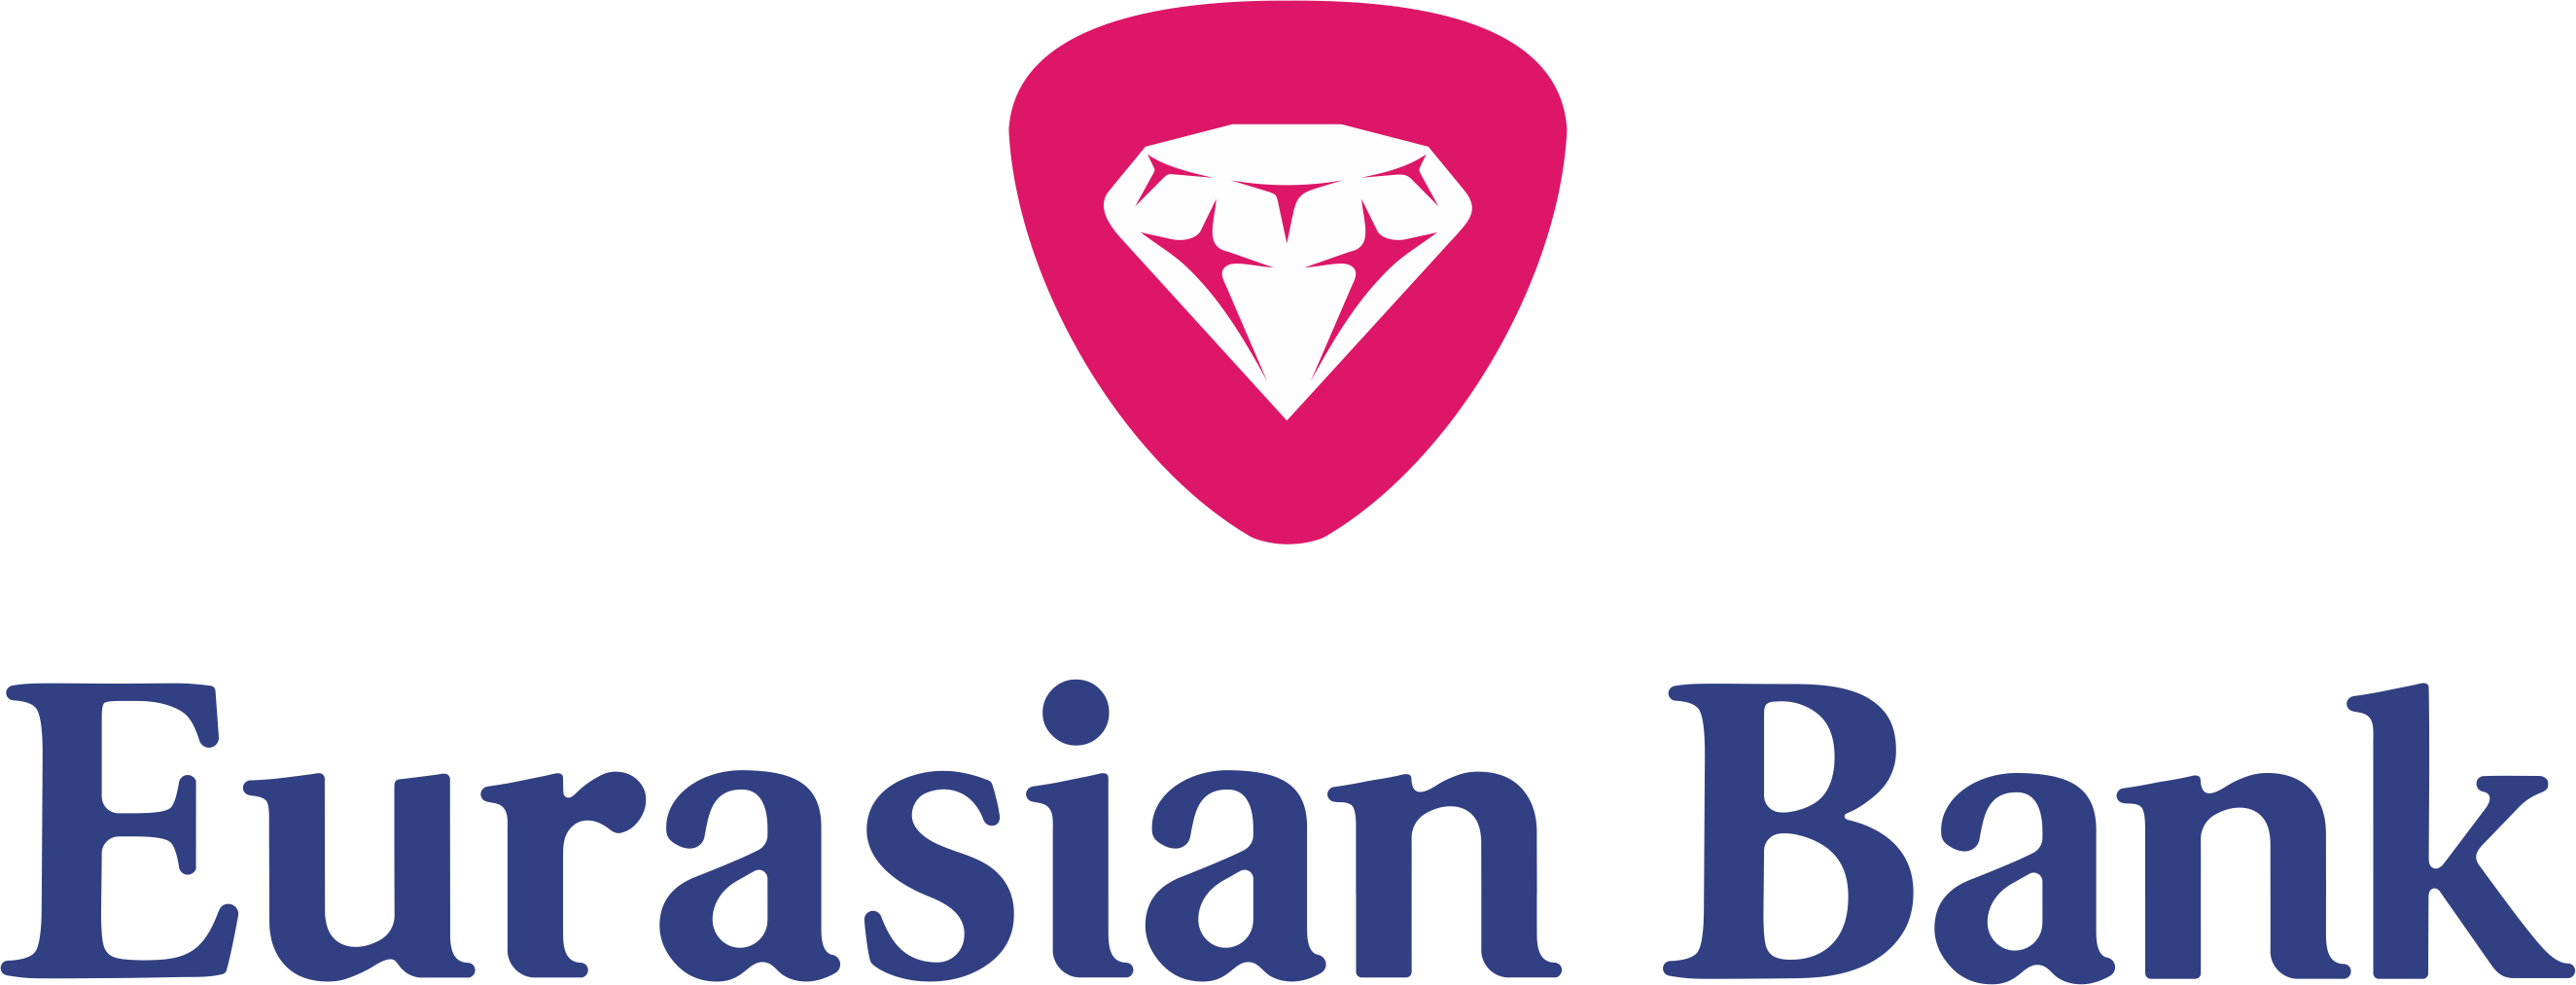 Инг евразия. Евразийский банк. Логотип Евразийского банка. Eurasian Bank лого. Евразийский банк Казахстан.